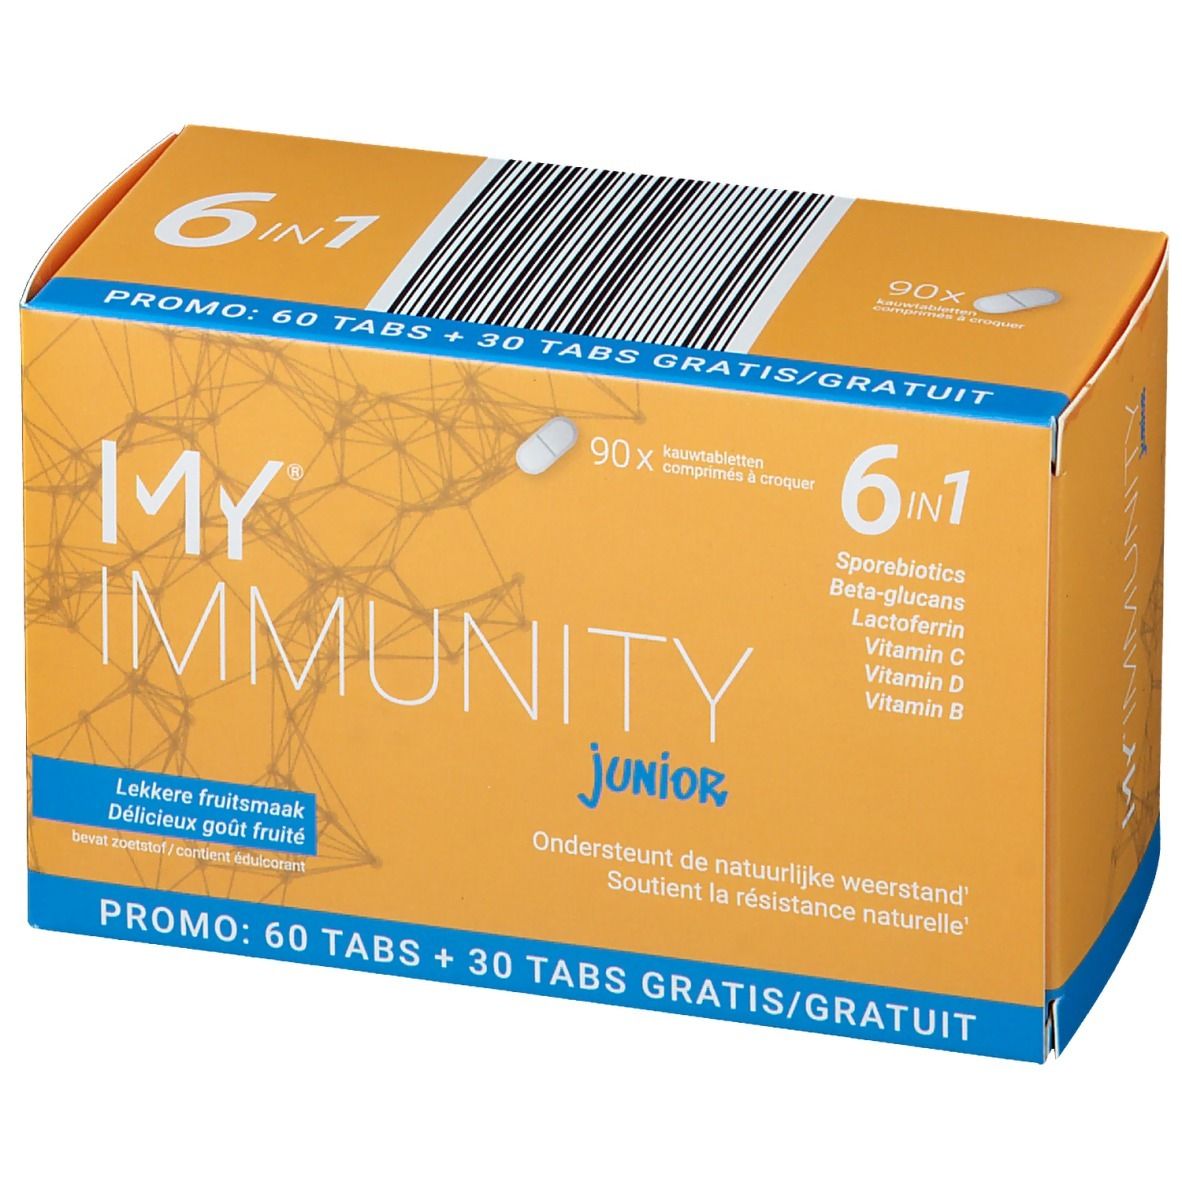 My® Immunity Junior